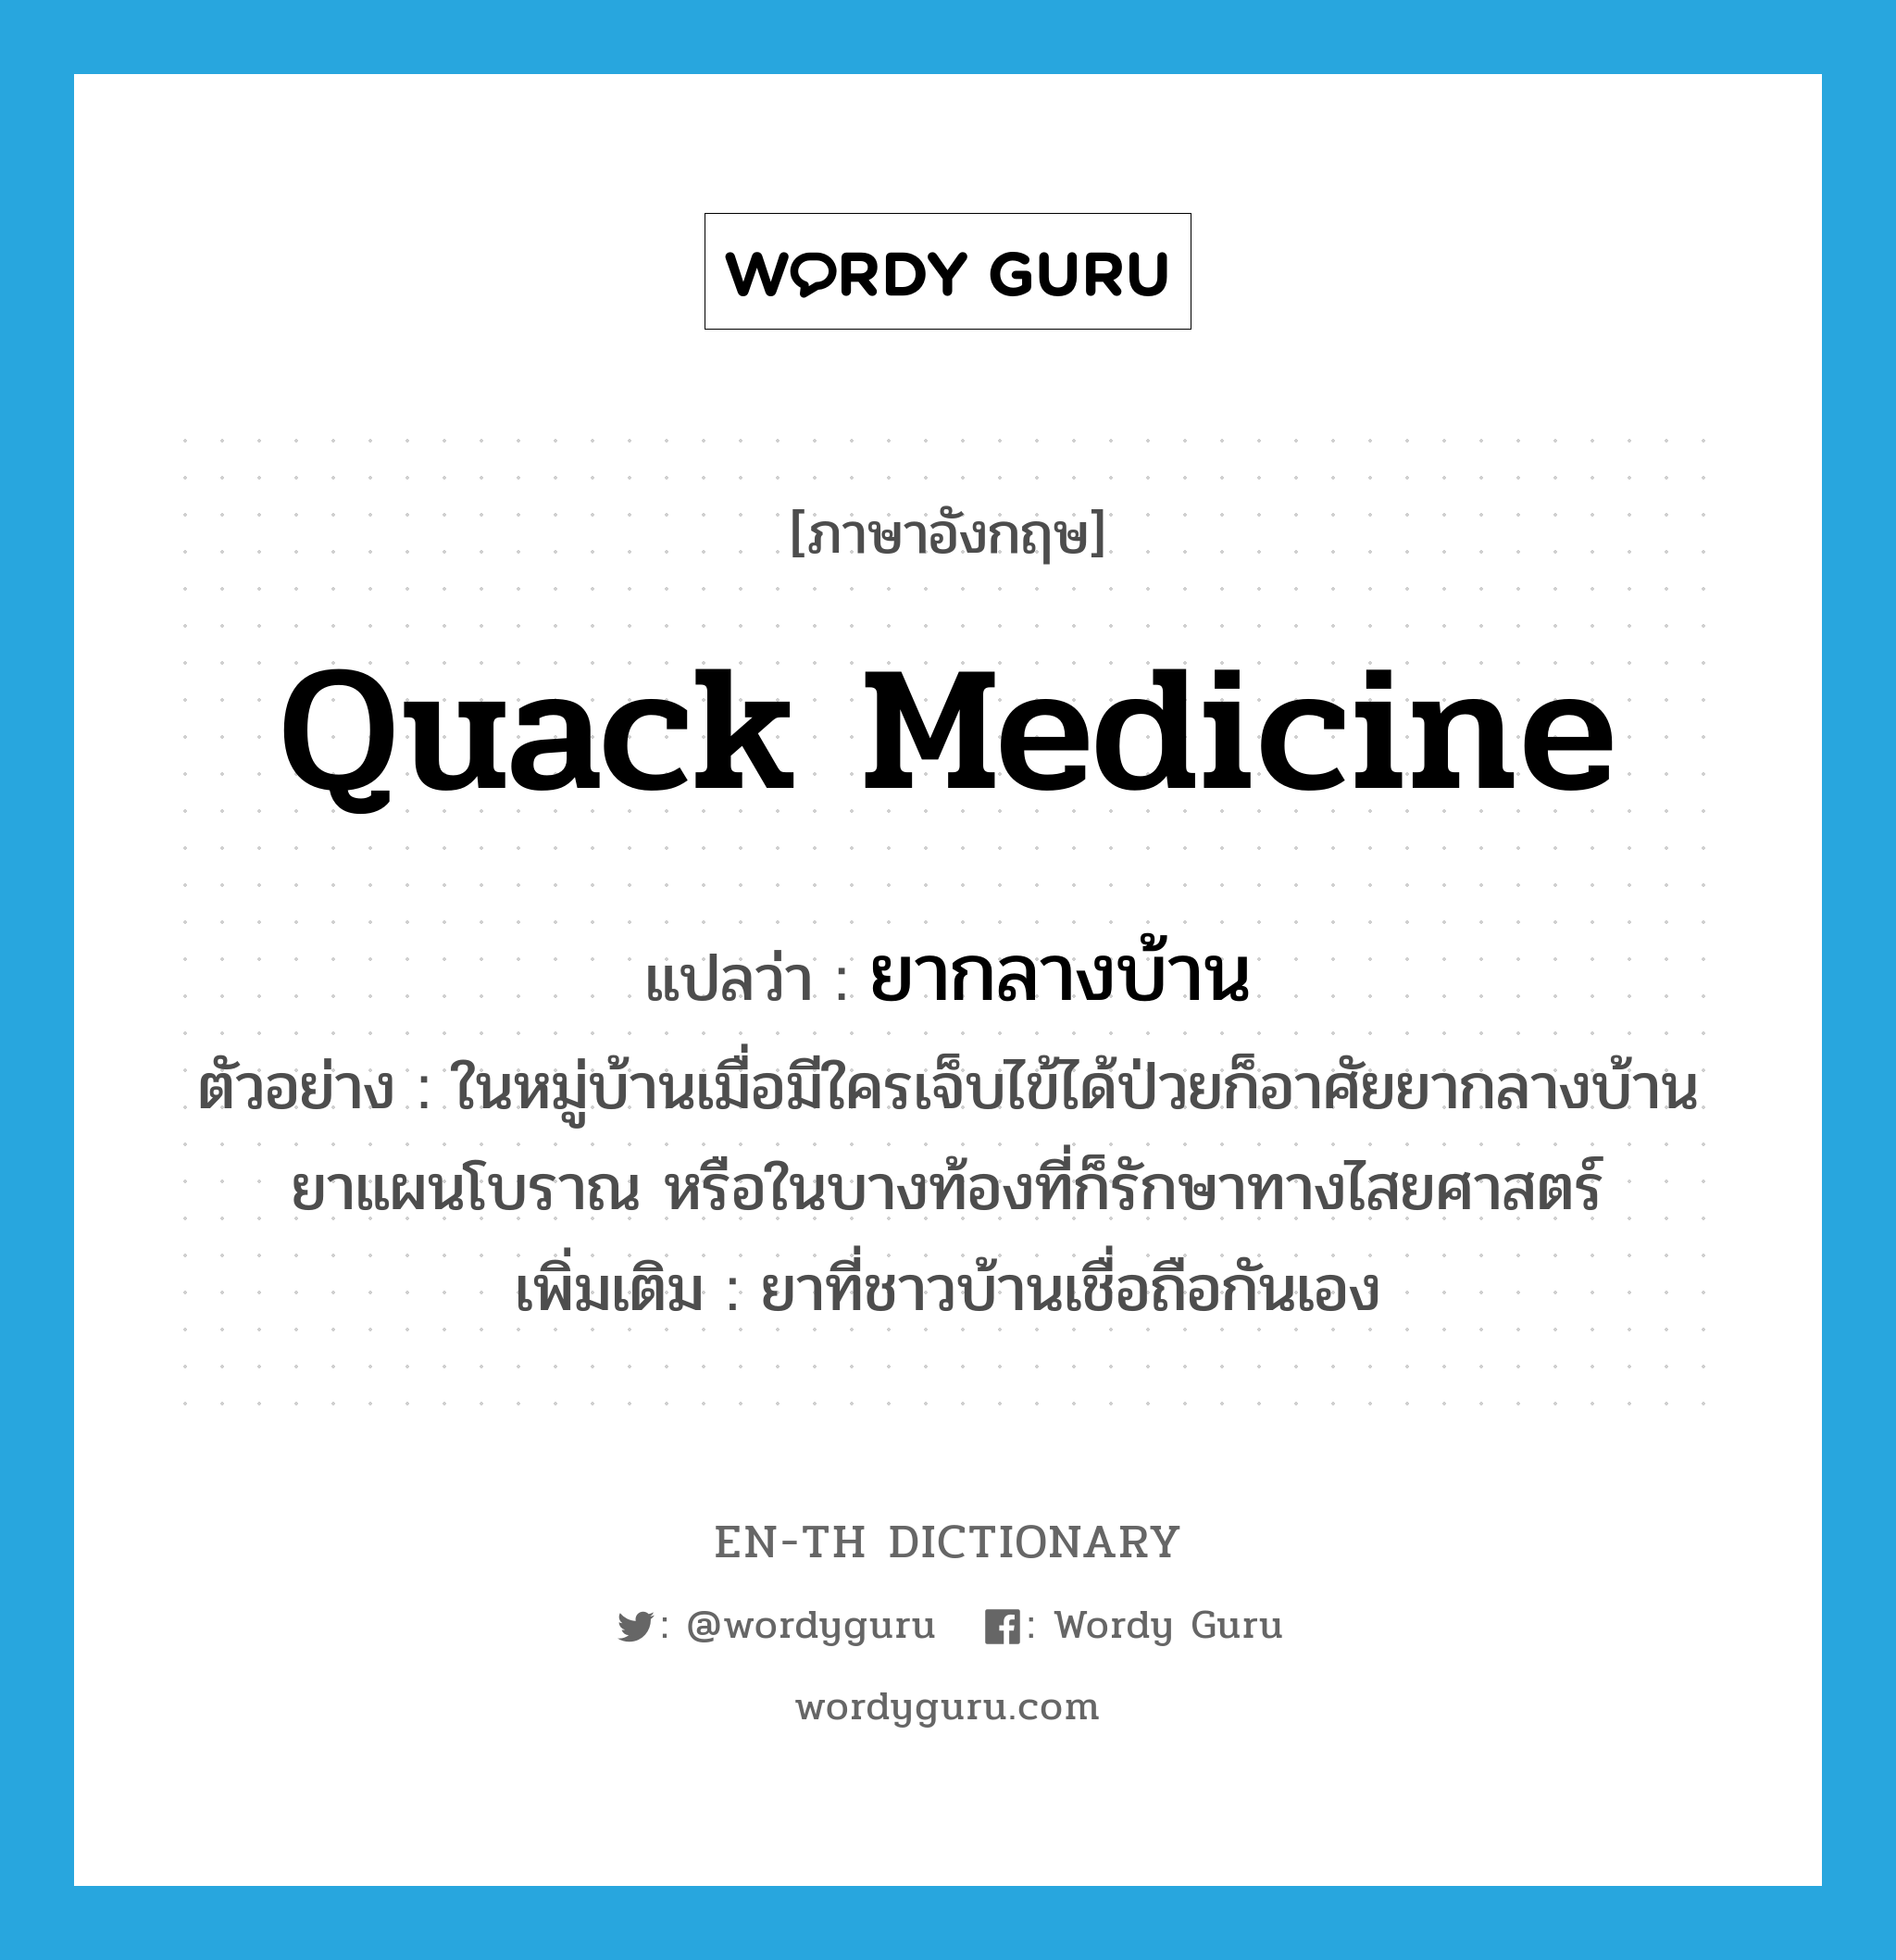 ยากลางบ้าน ภาษาอังกฤษ?, คำศัพท์ภาษาอังกฤษ ยากลางบ้าน แปลว่า quack medicine ประเภท N ตัวอย่าง ในหมู่บ้านเมื่อมีใครเจ็บไข้ได้ป่วยก็อาศัยยากลางบ้าน ยาแผนโบราณ หรือในบางท้องที่ก็รักษาทางไสยศาสตร์ เพิ่มเติม ยาที่ชาวบ้านเชื่อถือกันเอง หมวด N